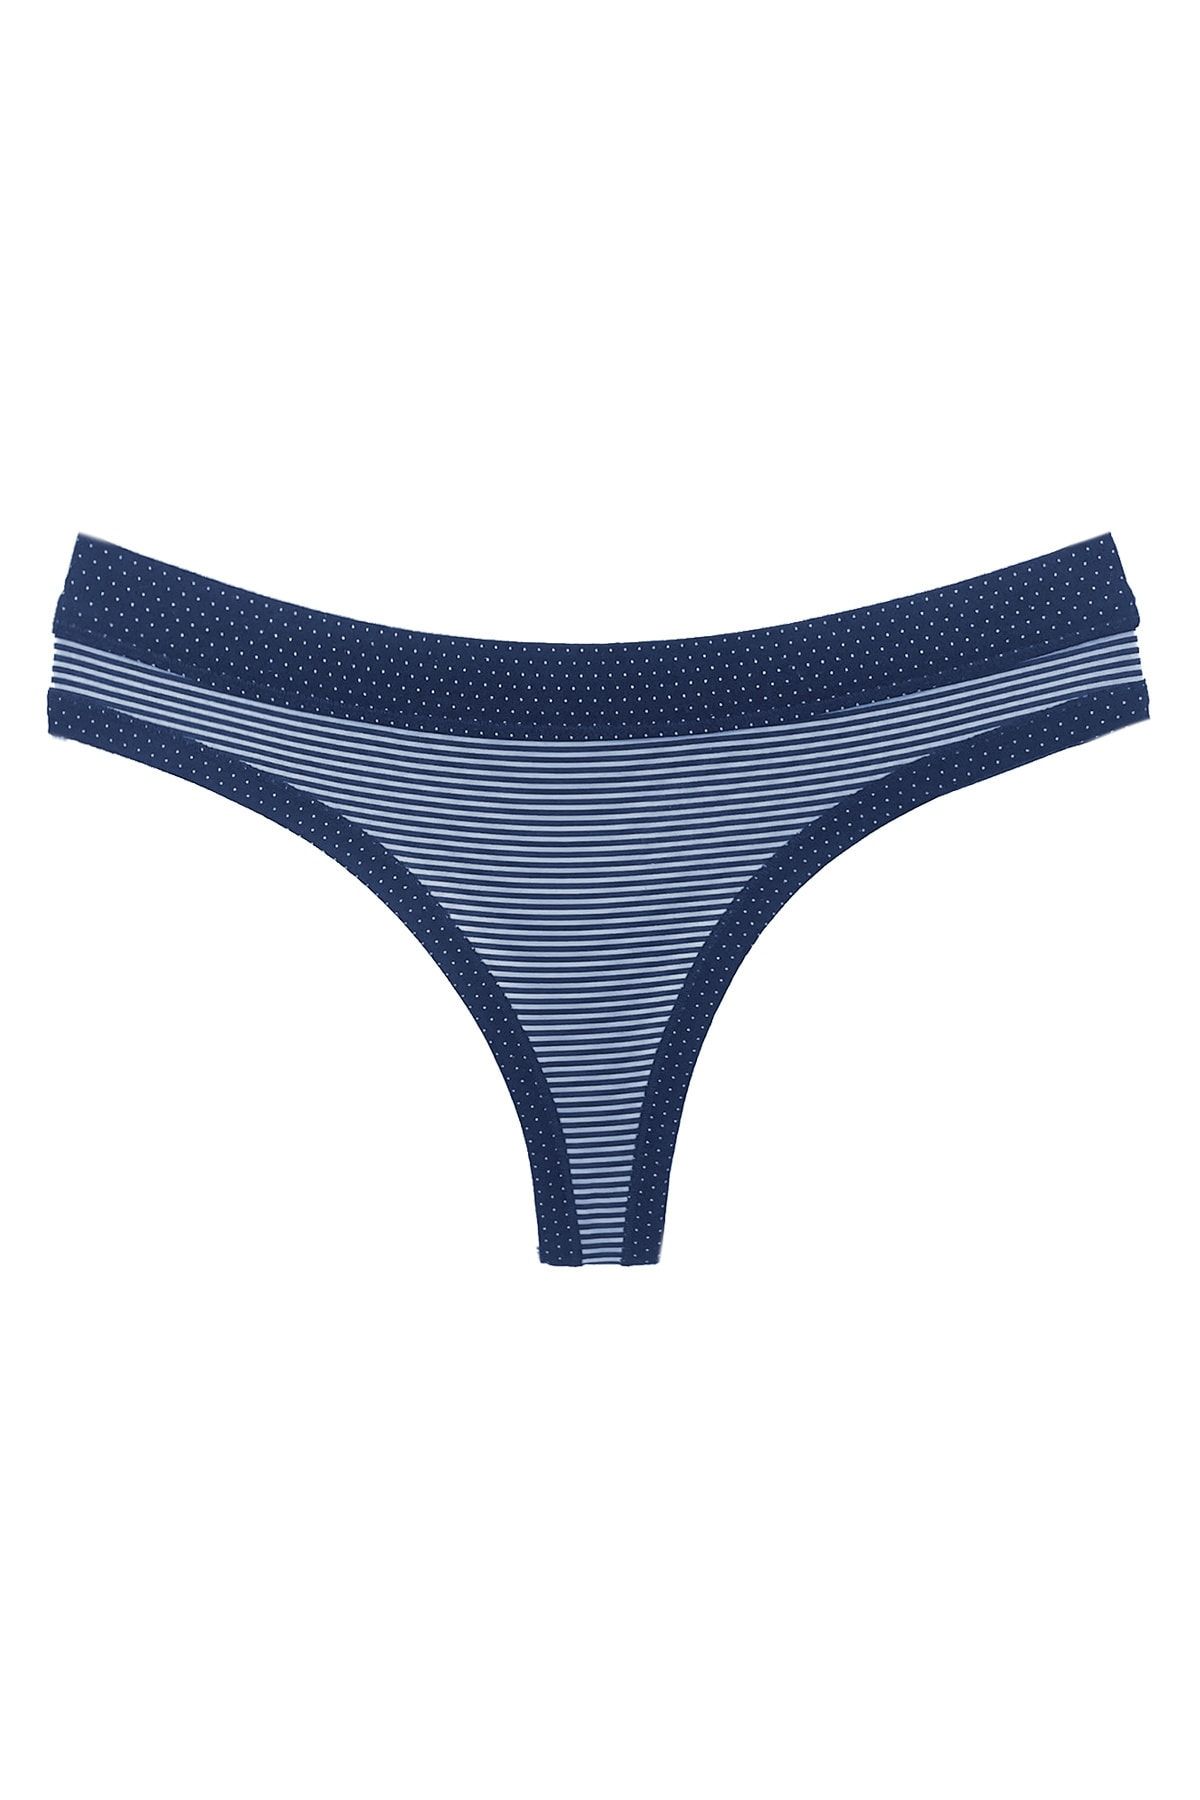 HNX 10 Pack Cotton Women's Thong Panties - Trendyol